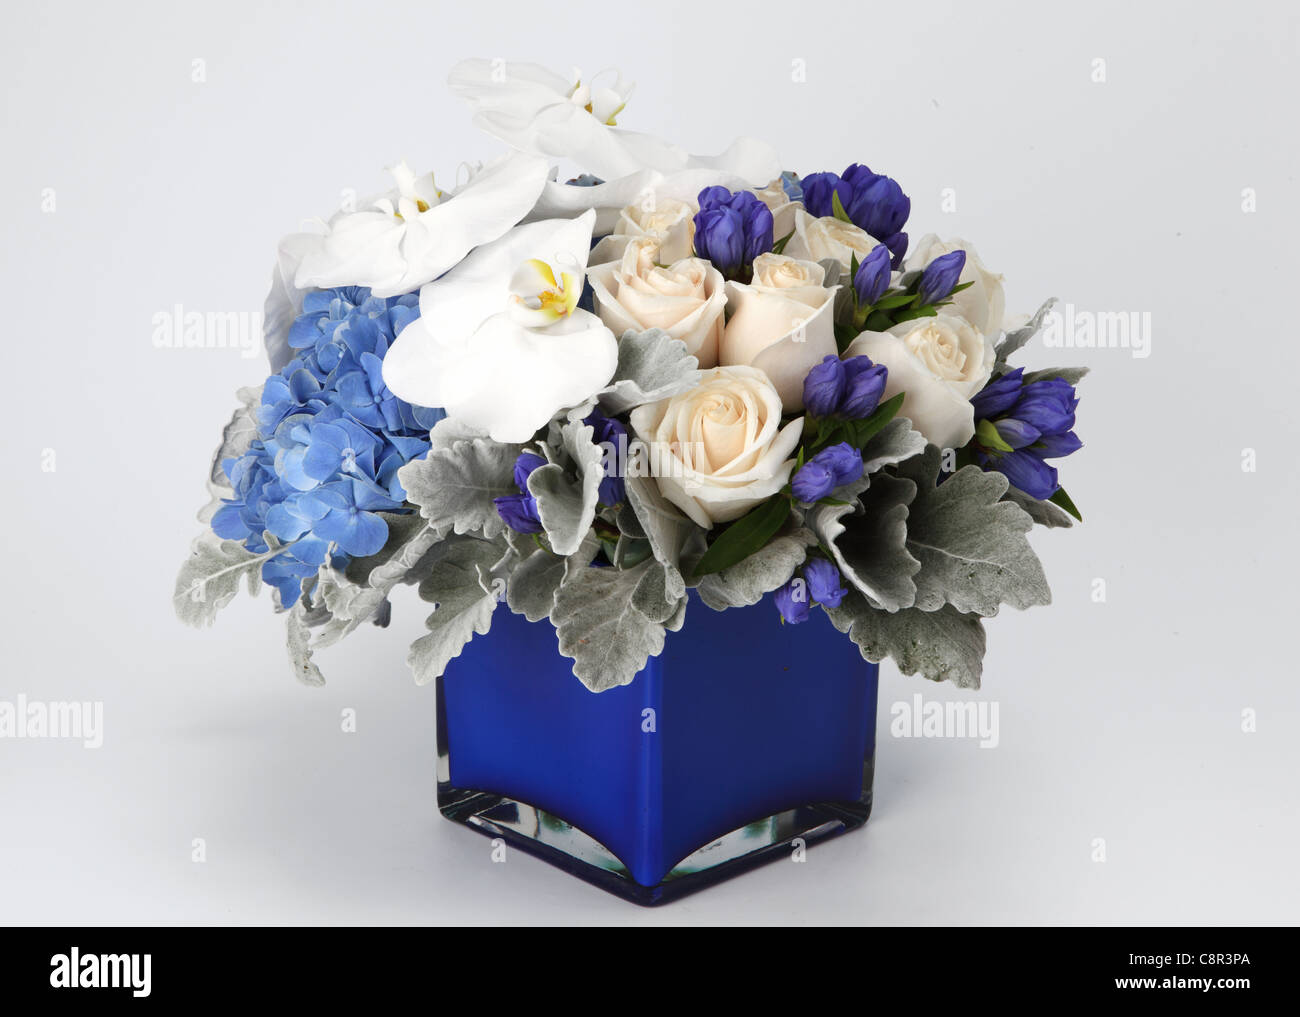 Un primer plano de un colorido ramo de flores en un florero. Crema de rosas, hortensias, azul 1 phalaenopsis blanco, morado desconocido las yemas. Foto de stock